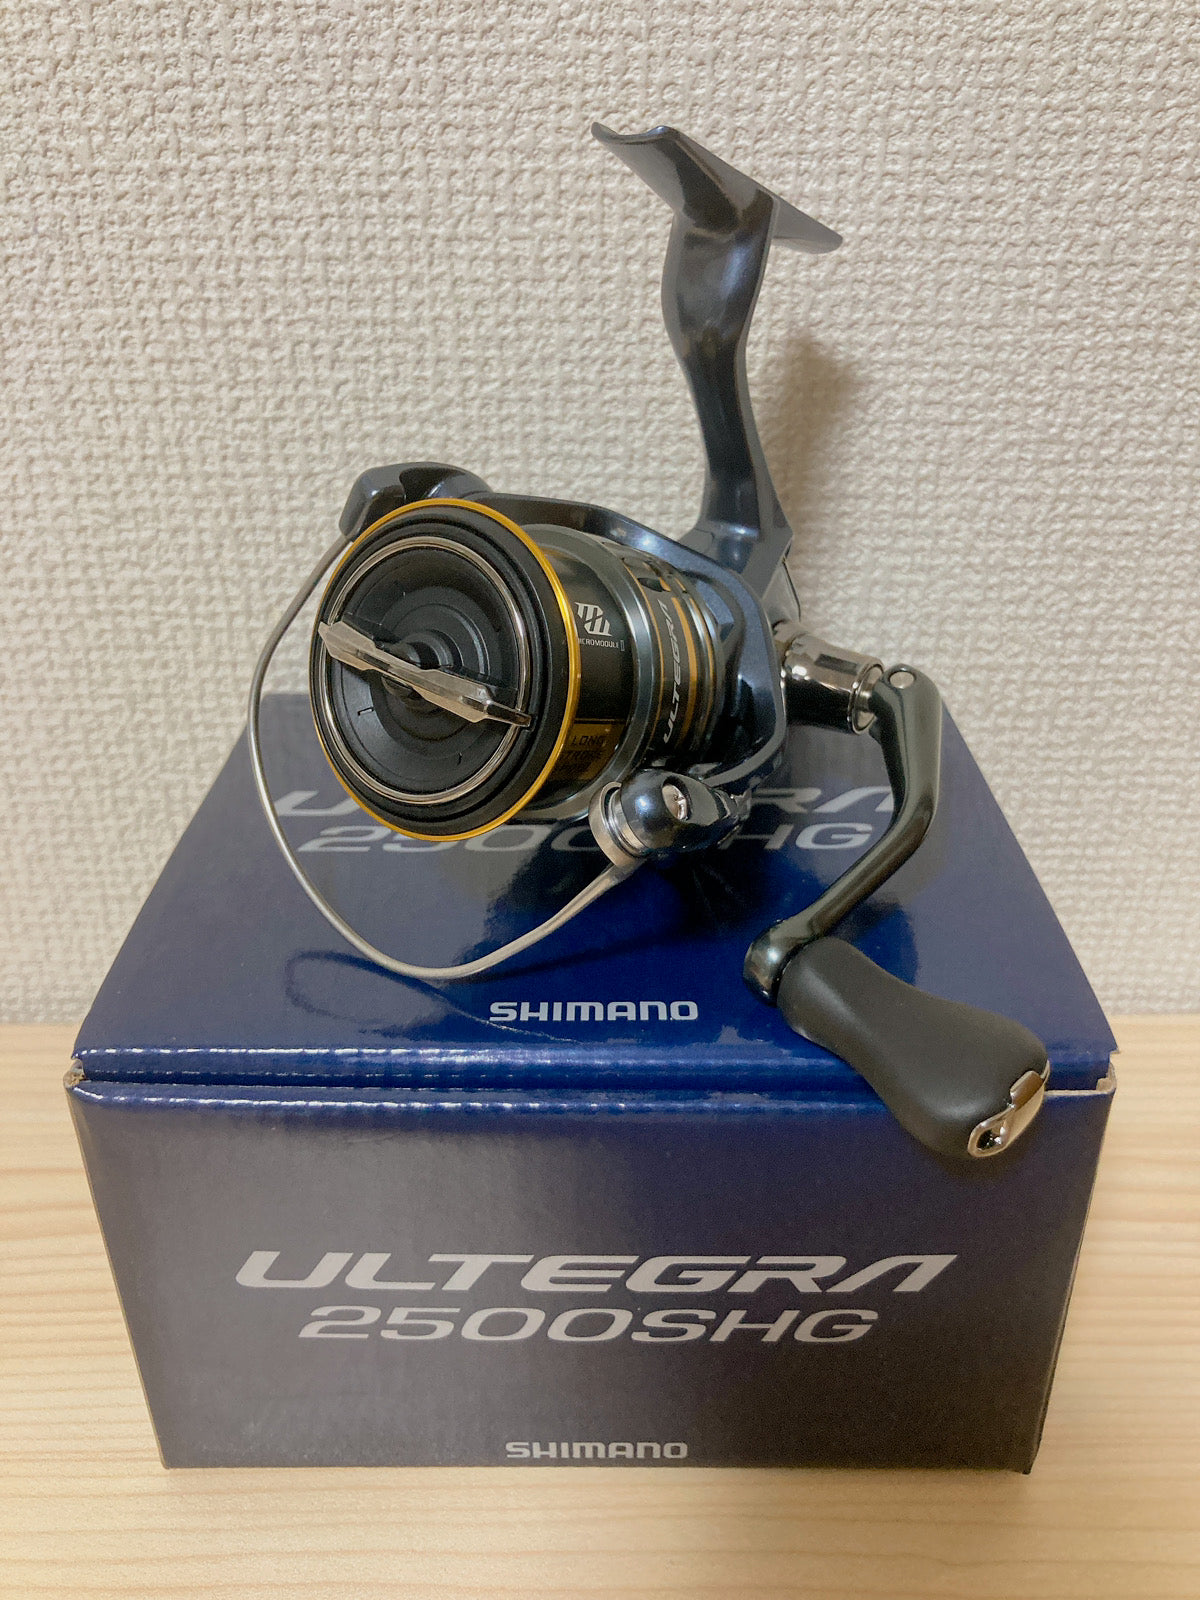 Shimano Spinning Reel 21 Ultegra - 2500SHG